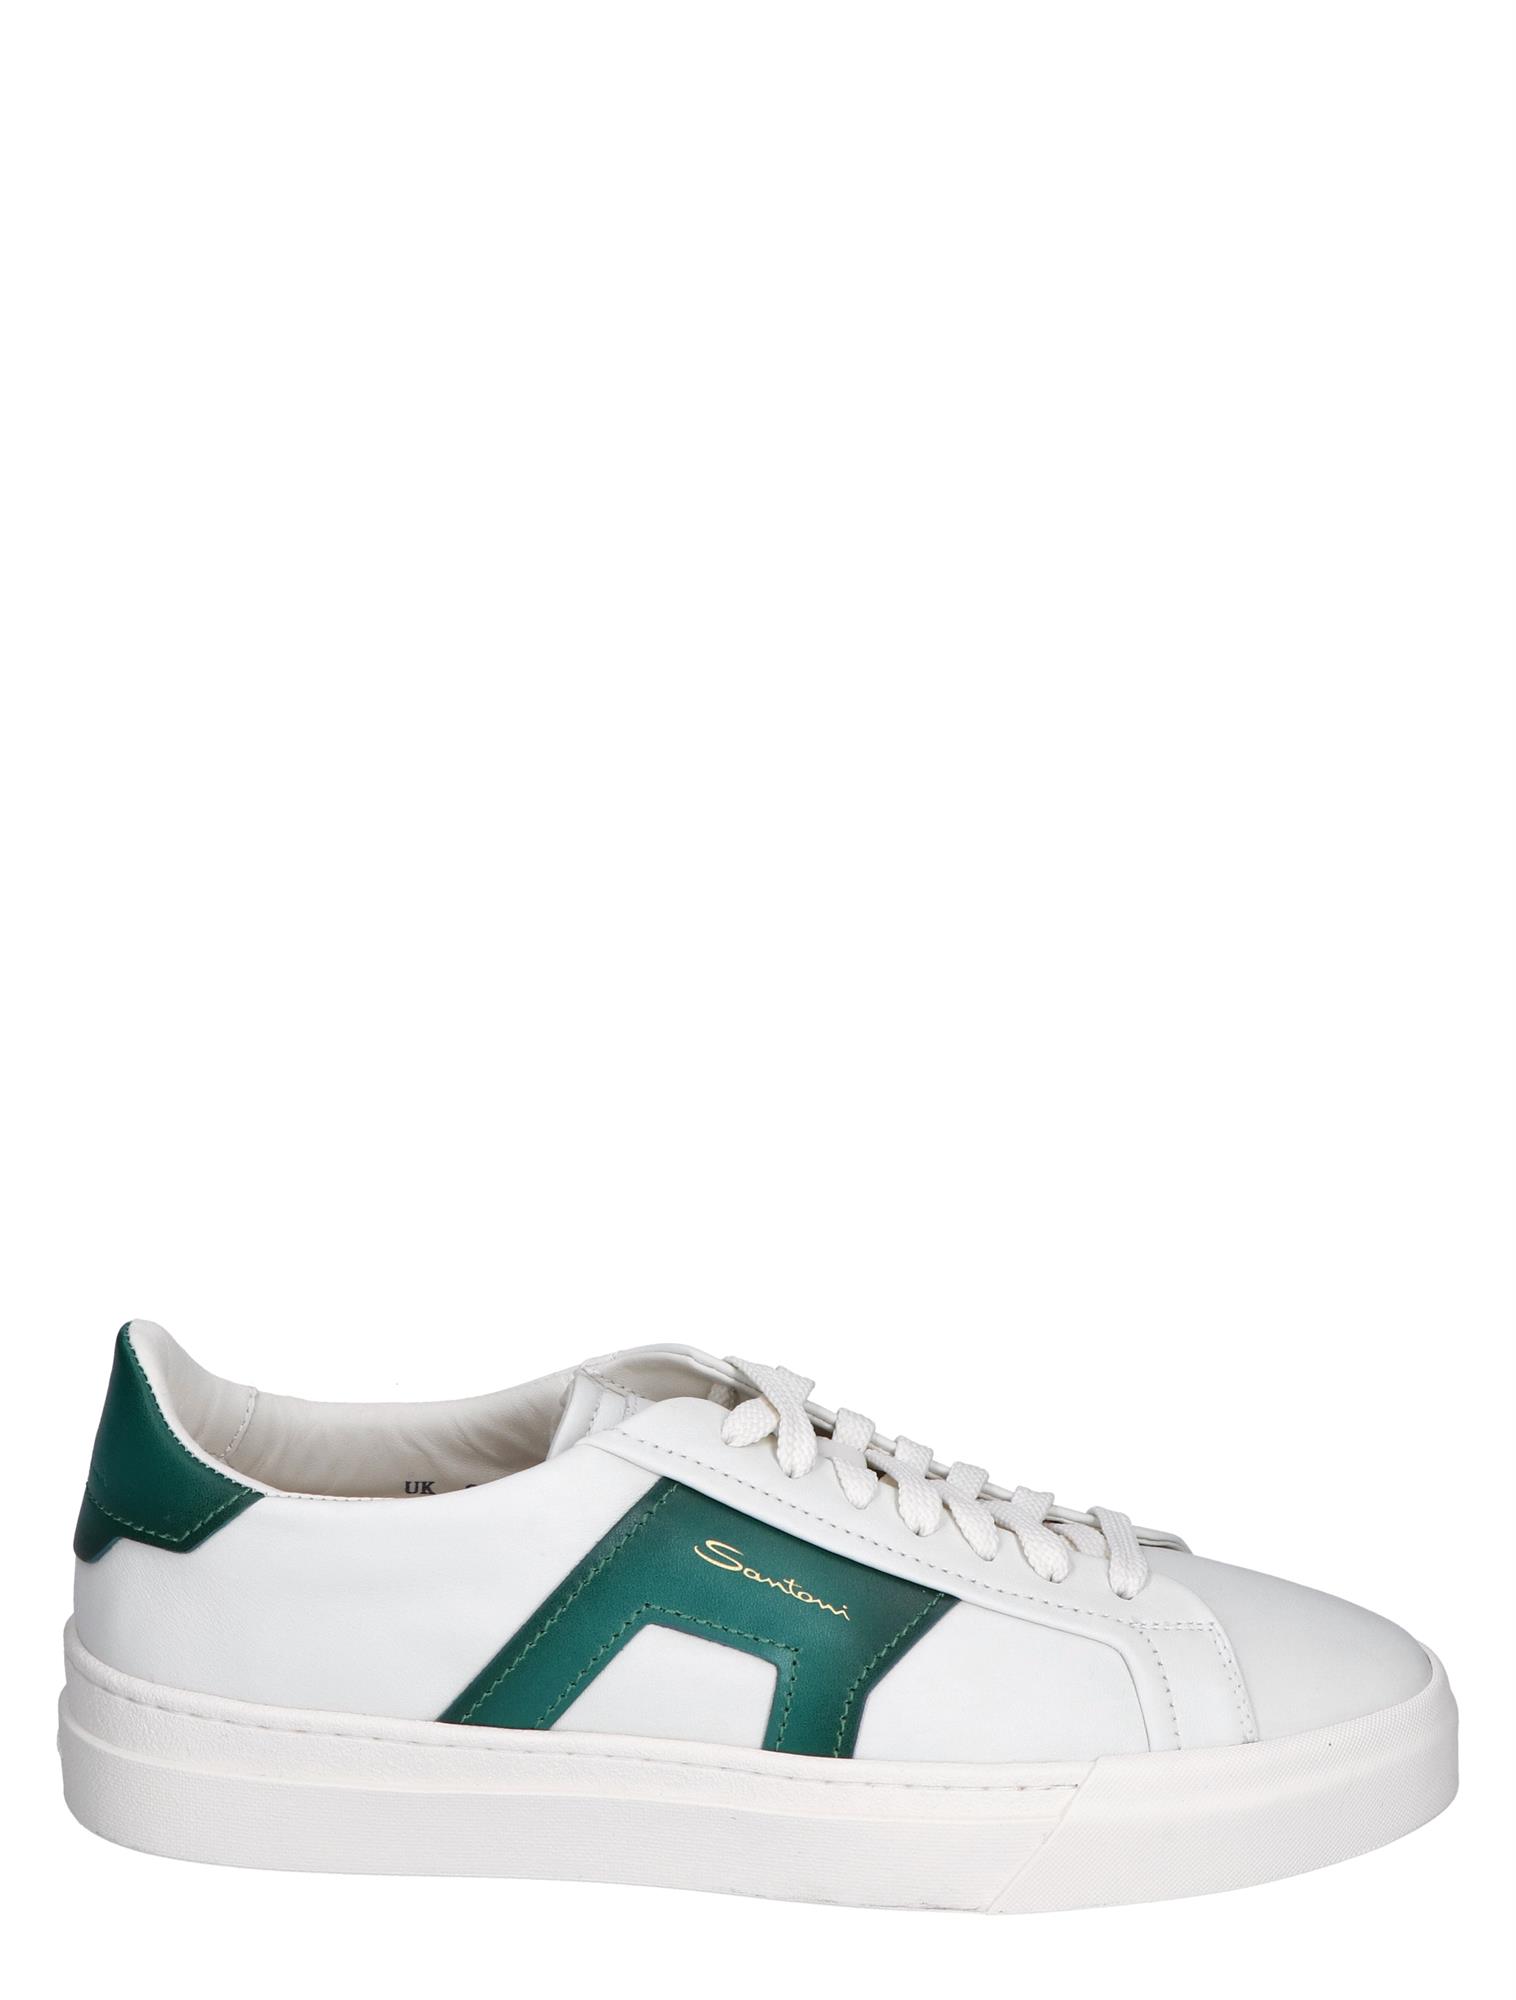 Baby brand Bisschop Santoni Leather Double Buckle Sneaker White Green | Nolten